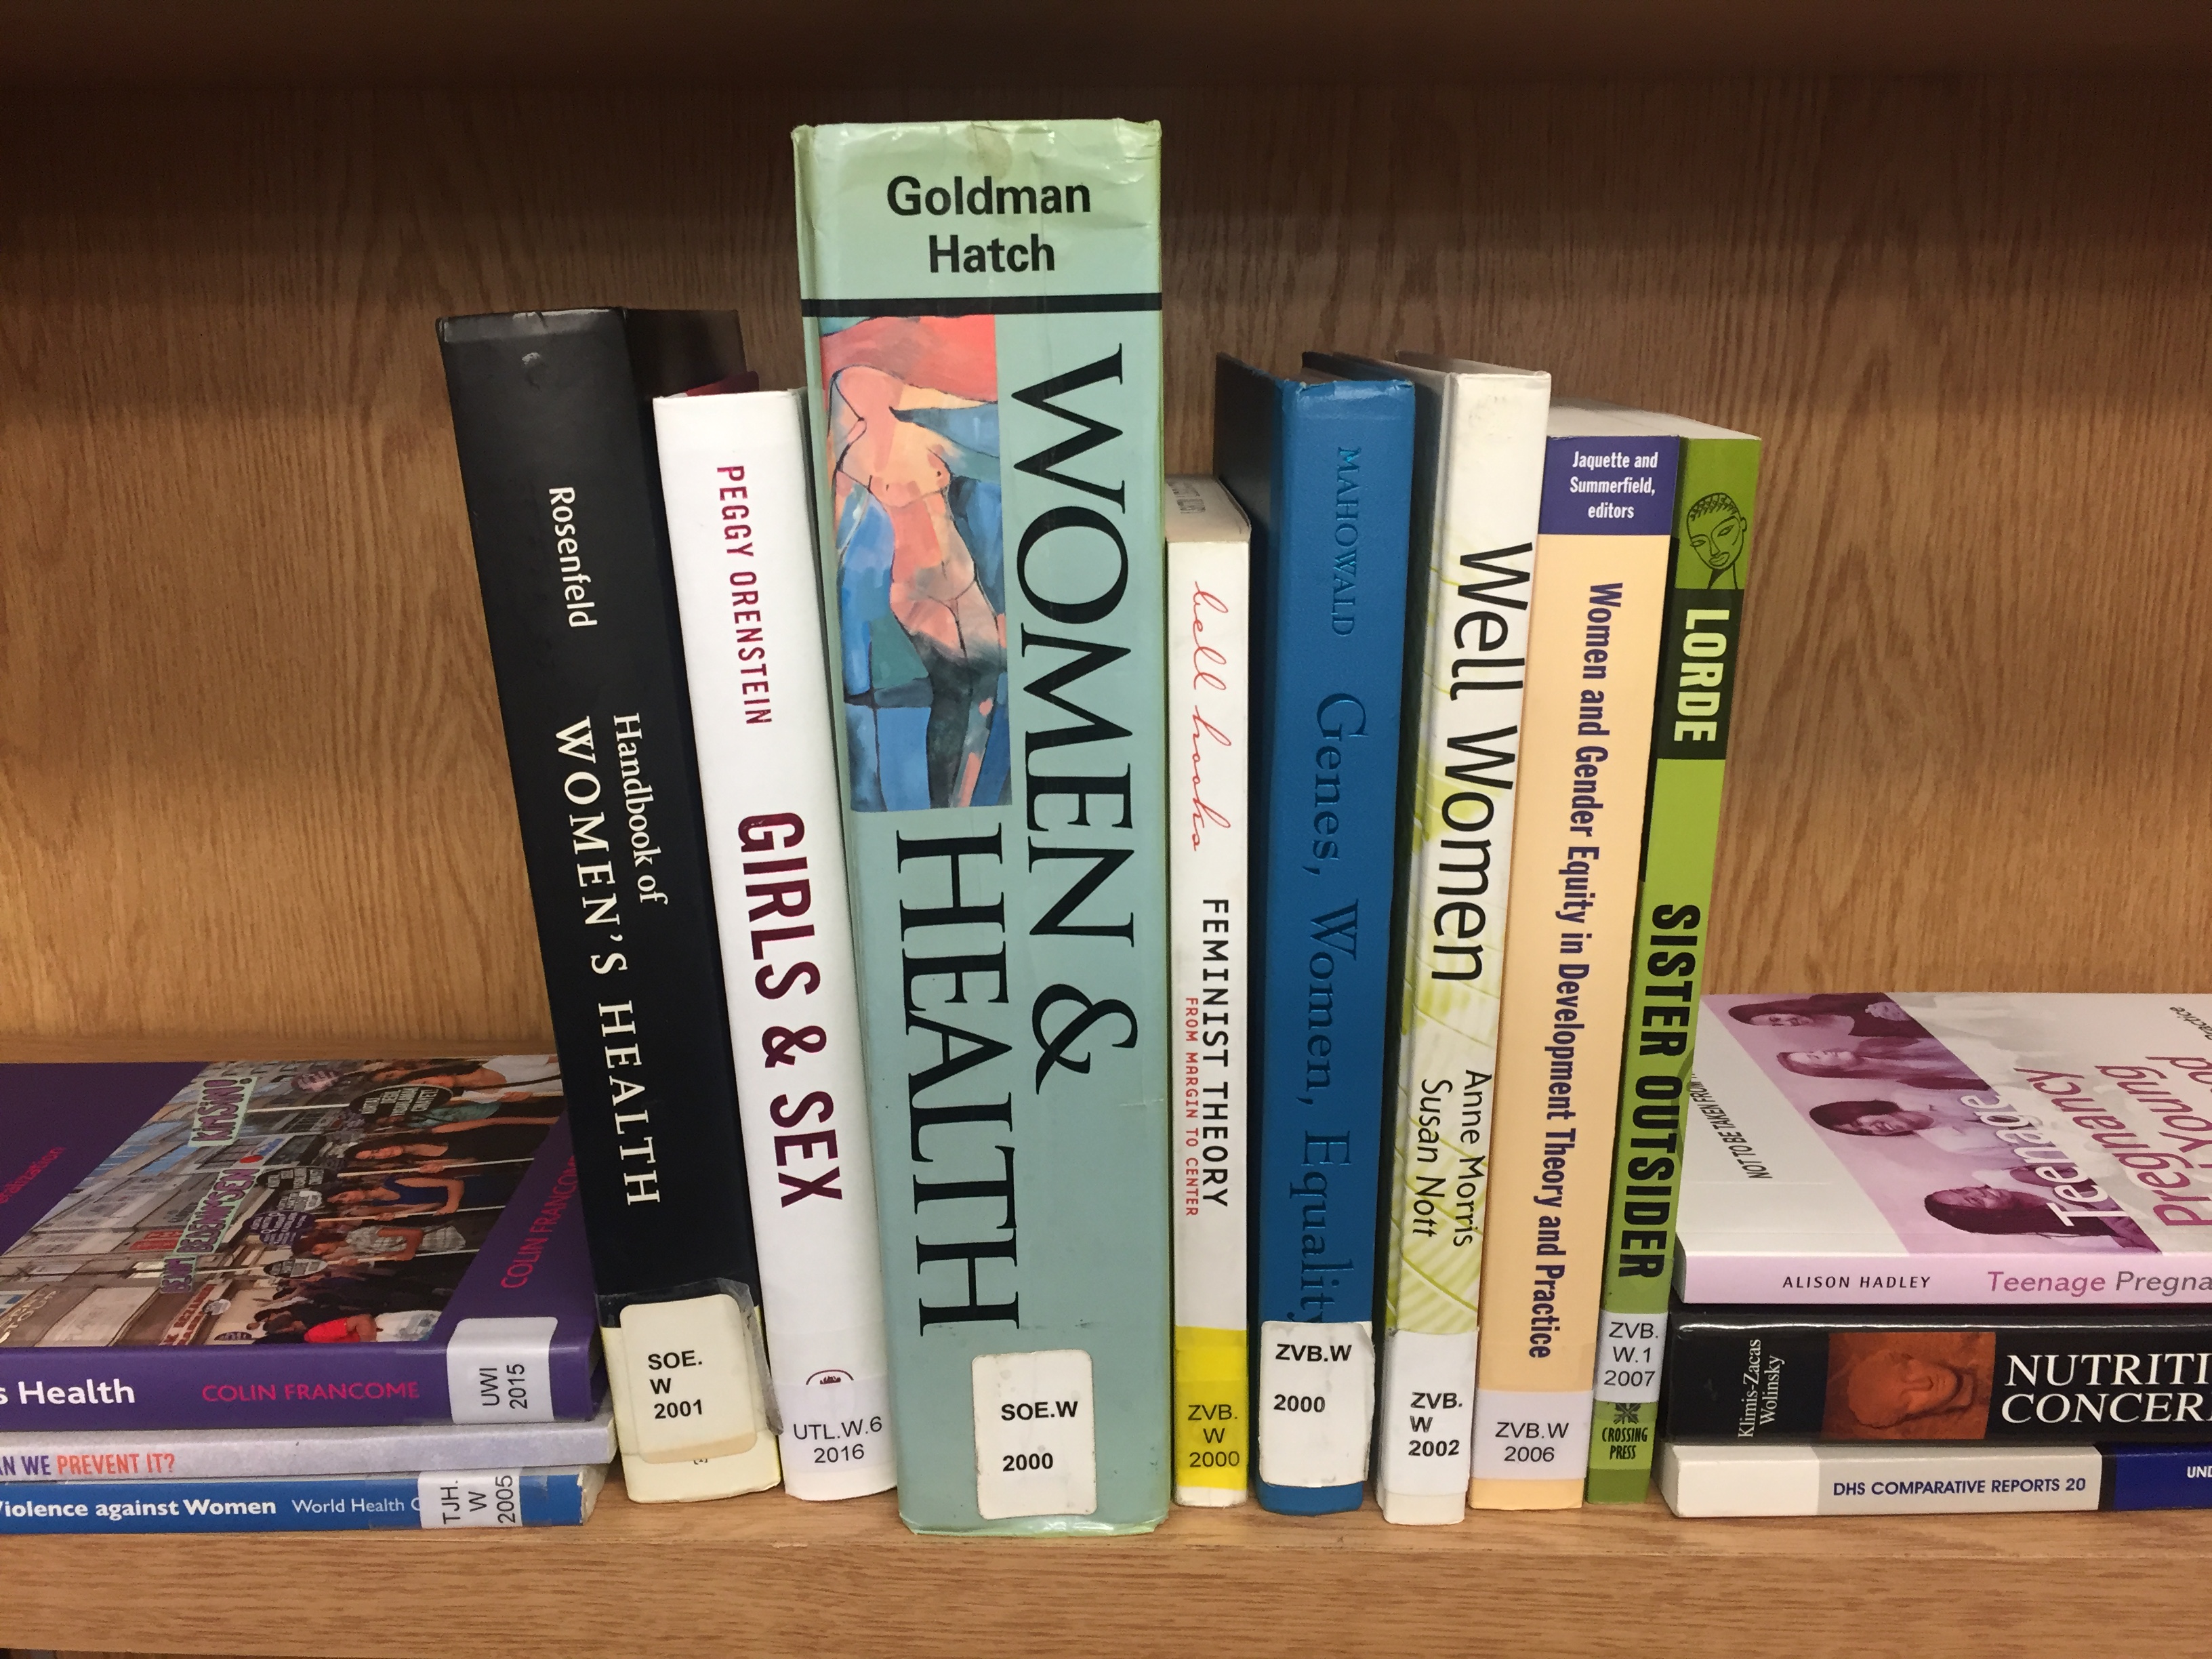 LSHTM books on women’s health